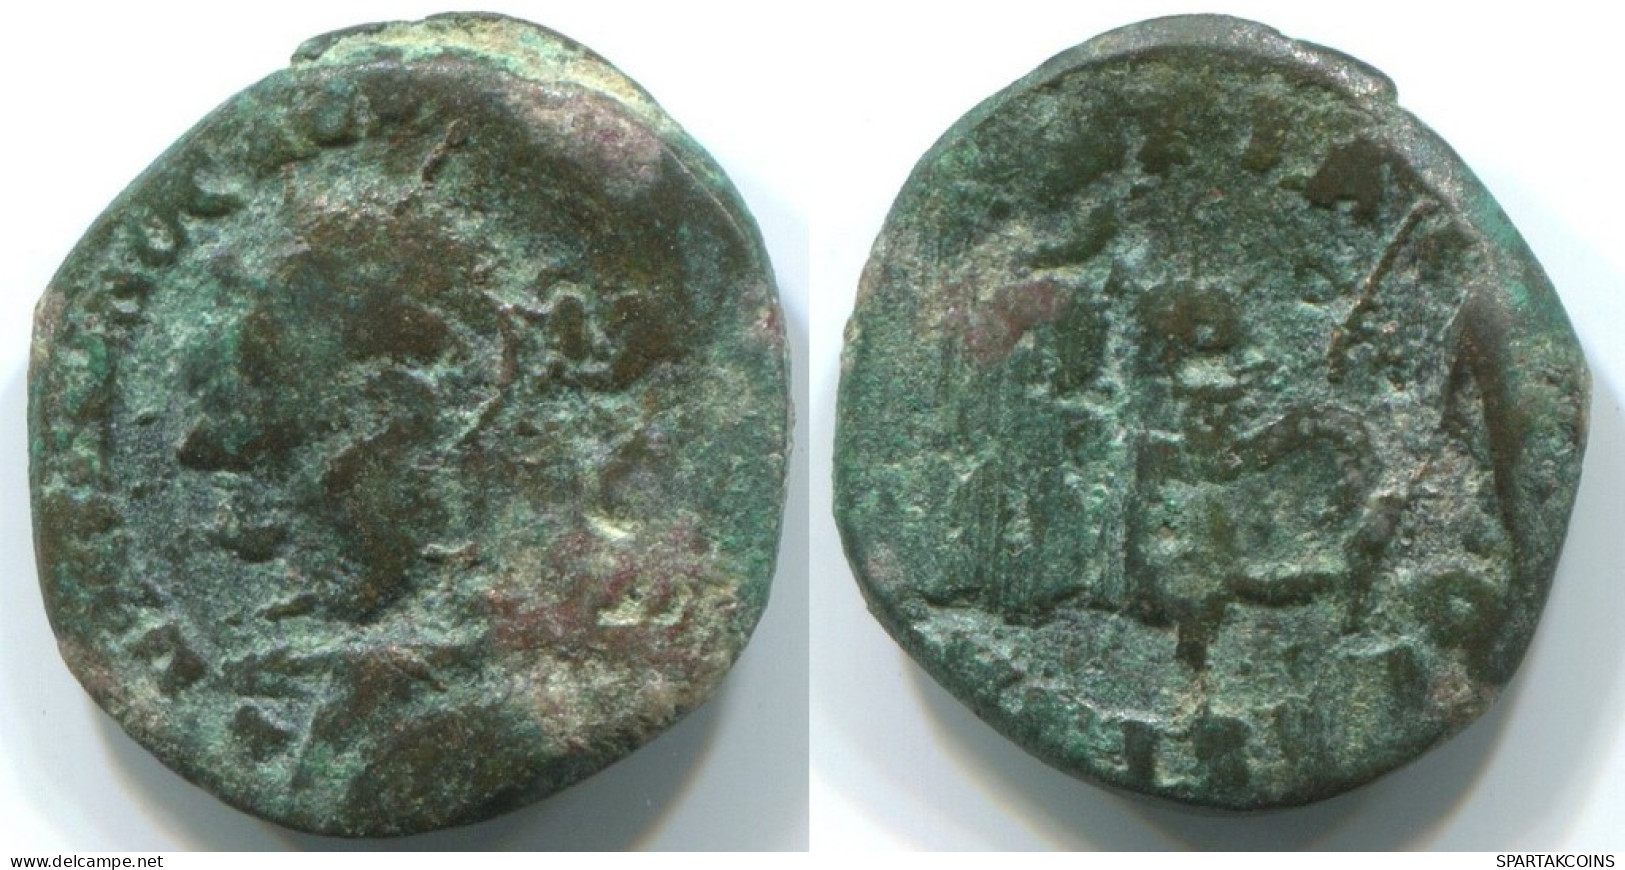 ROMAN PROVINCIAL Authentic Original Ancient Coin 2.9g/15mm #ANT1343.31.U.A - Röm. Provinz